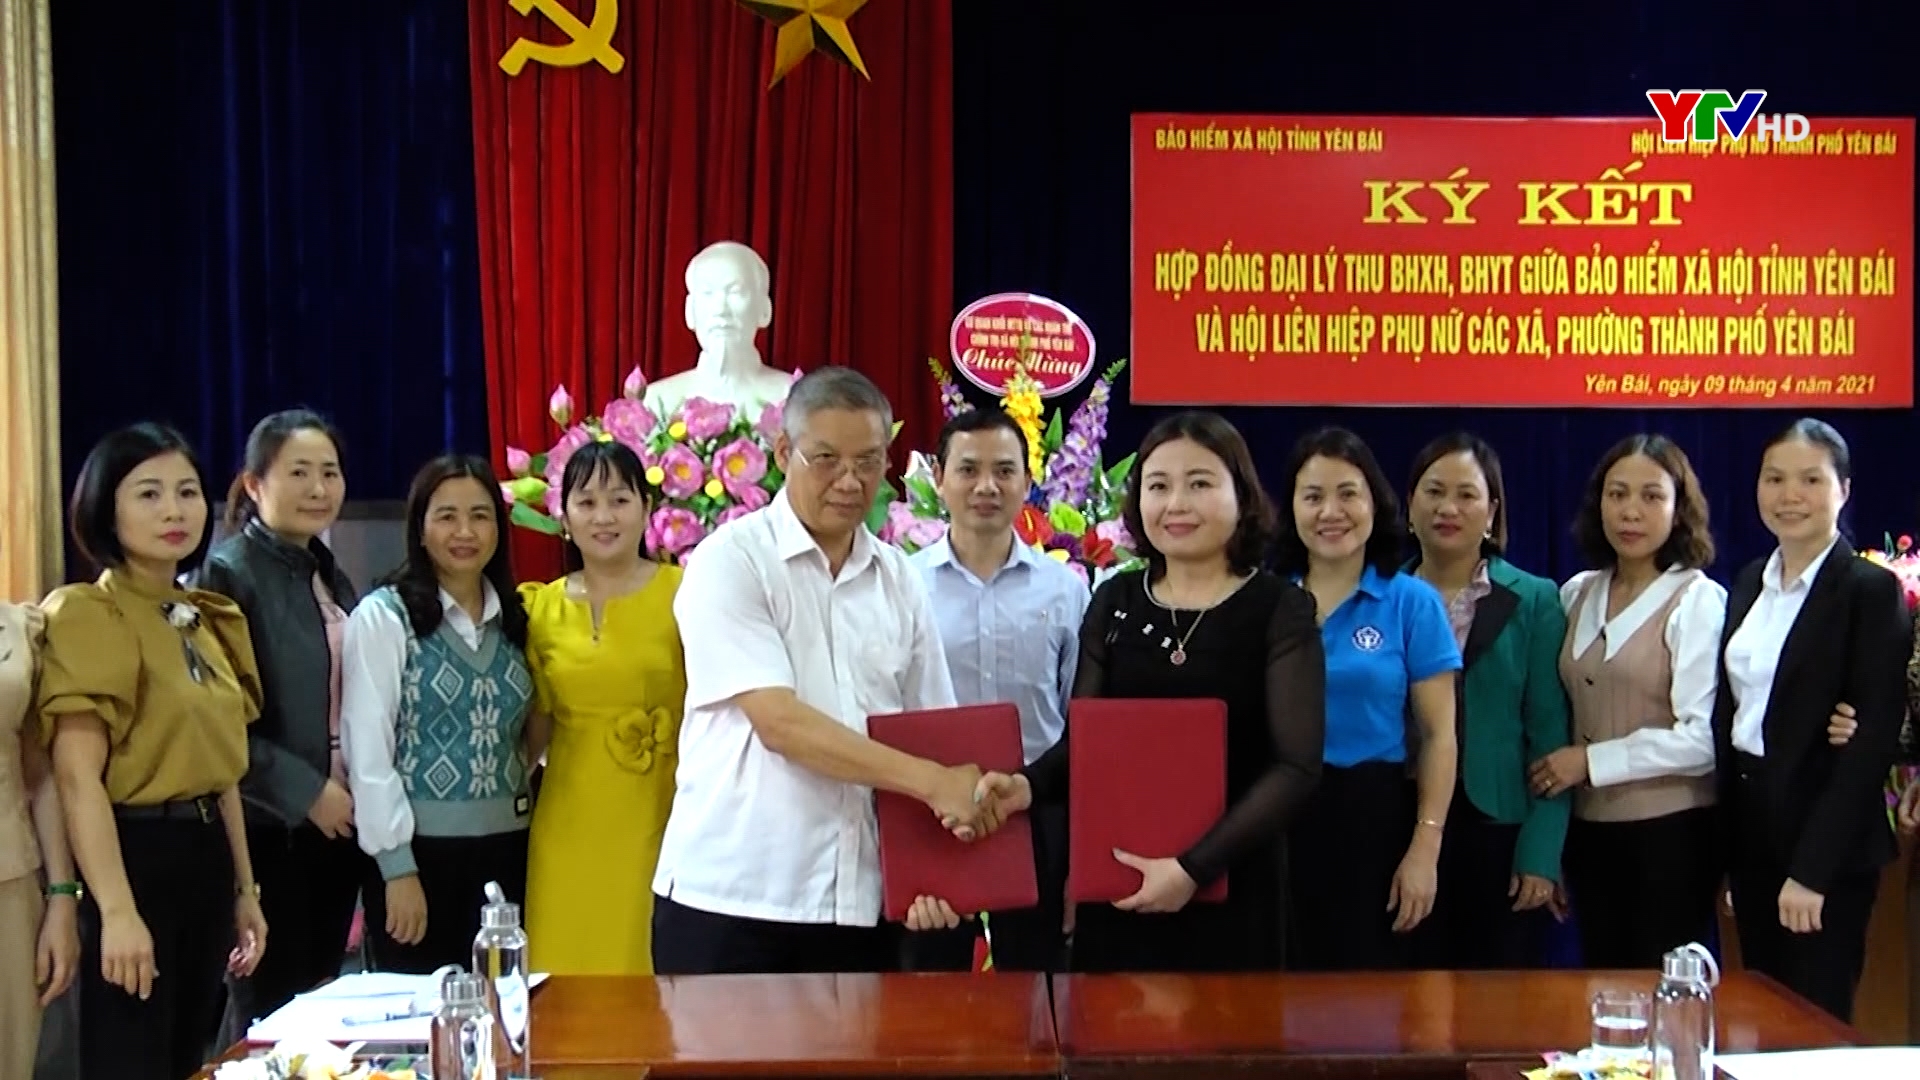 Ký kết hợp đồng Đại lý thu giữa BHXH tỉnh với Hội Phụ nữ thành phố Yên Bái